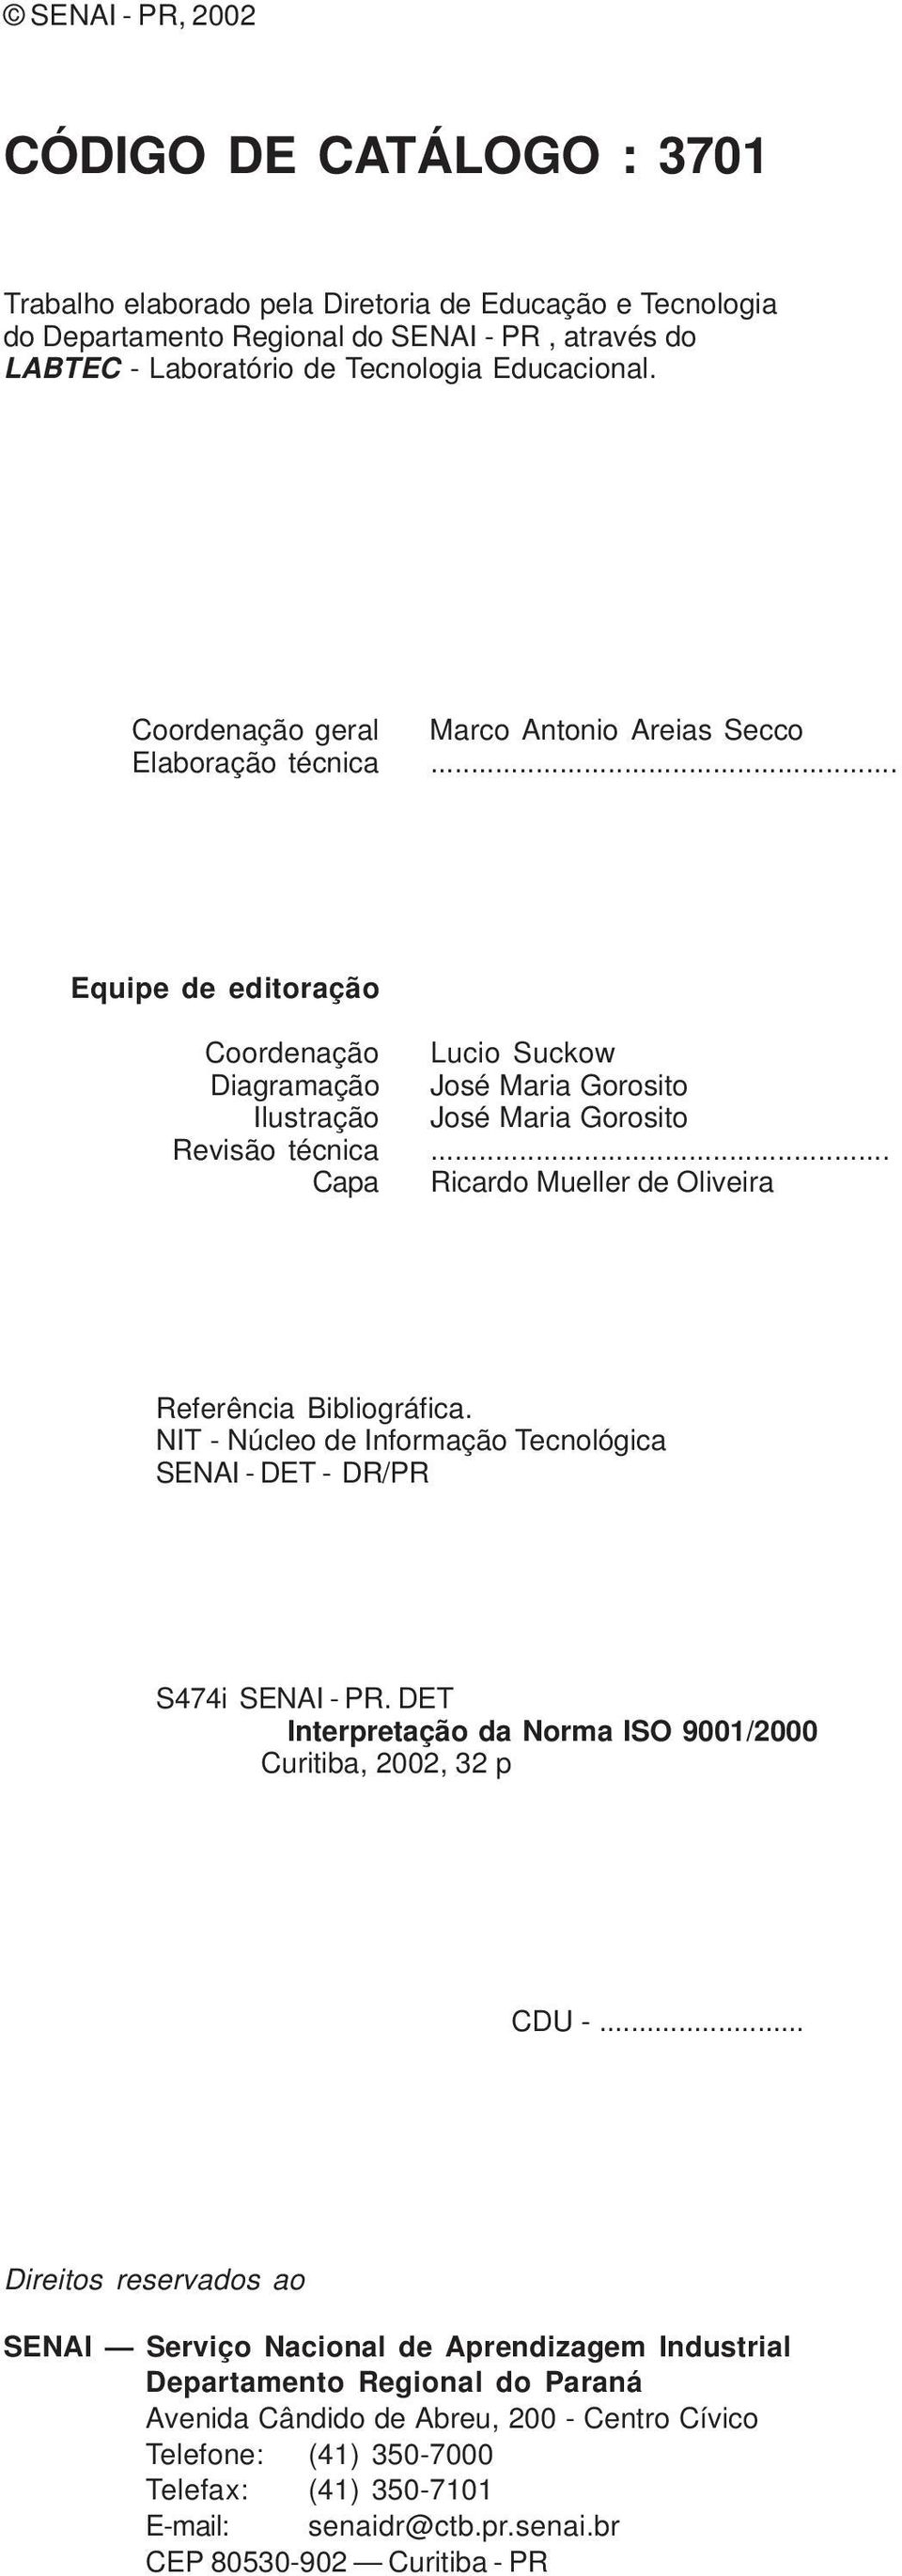 .. Capa Ricardo Mueller de Oliveira Referência Bibliográfica. NIT - Núcleo de Informação Tecnológica SENAI - DET - DR/PR S474i SENAI - PR.